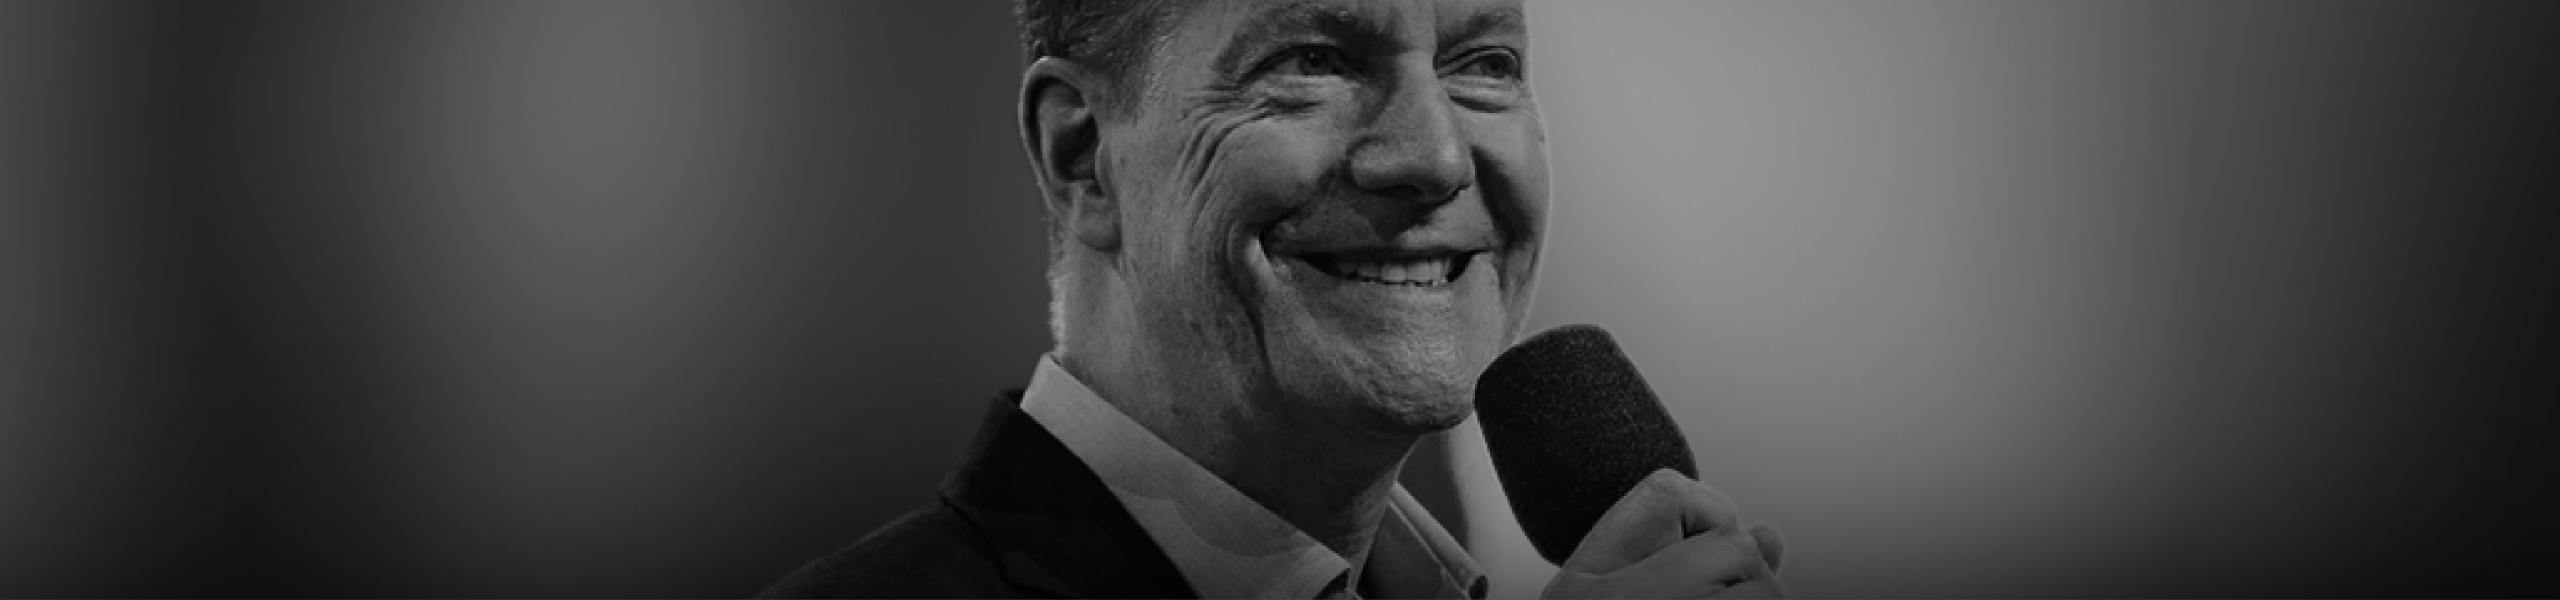 Robert Fergusson on Preaching | Hillsong Leadership Network TV